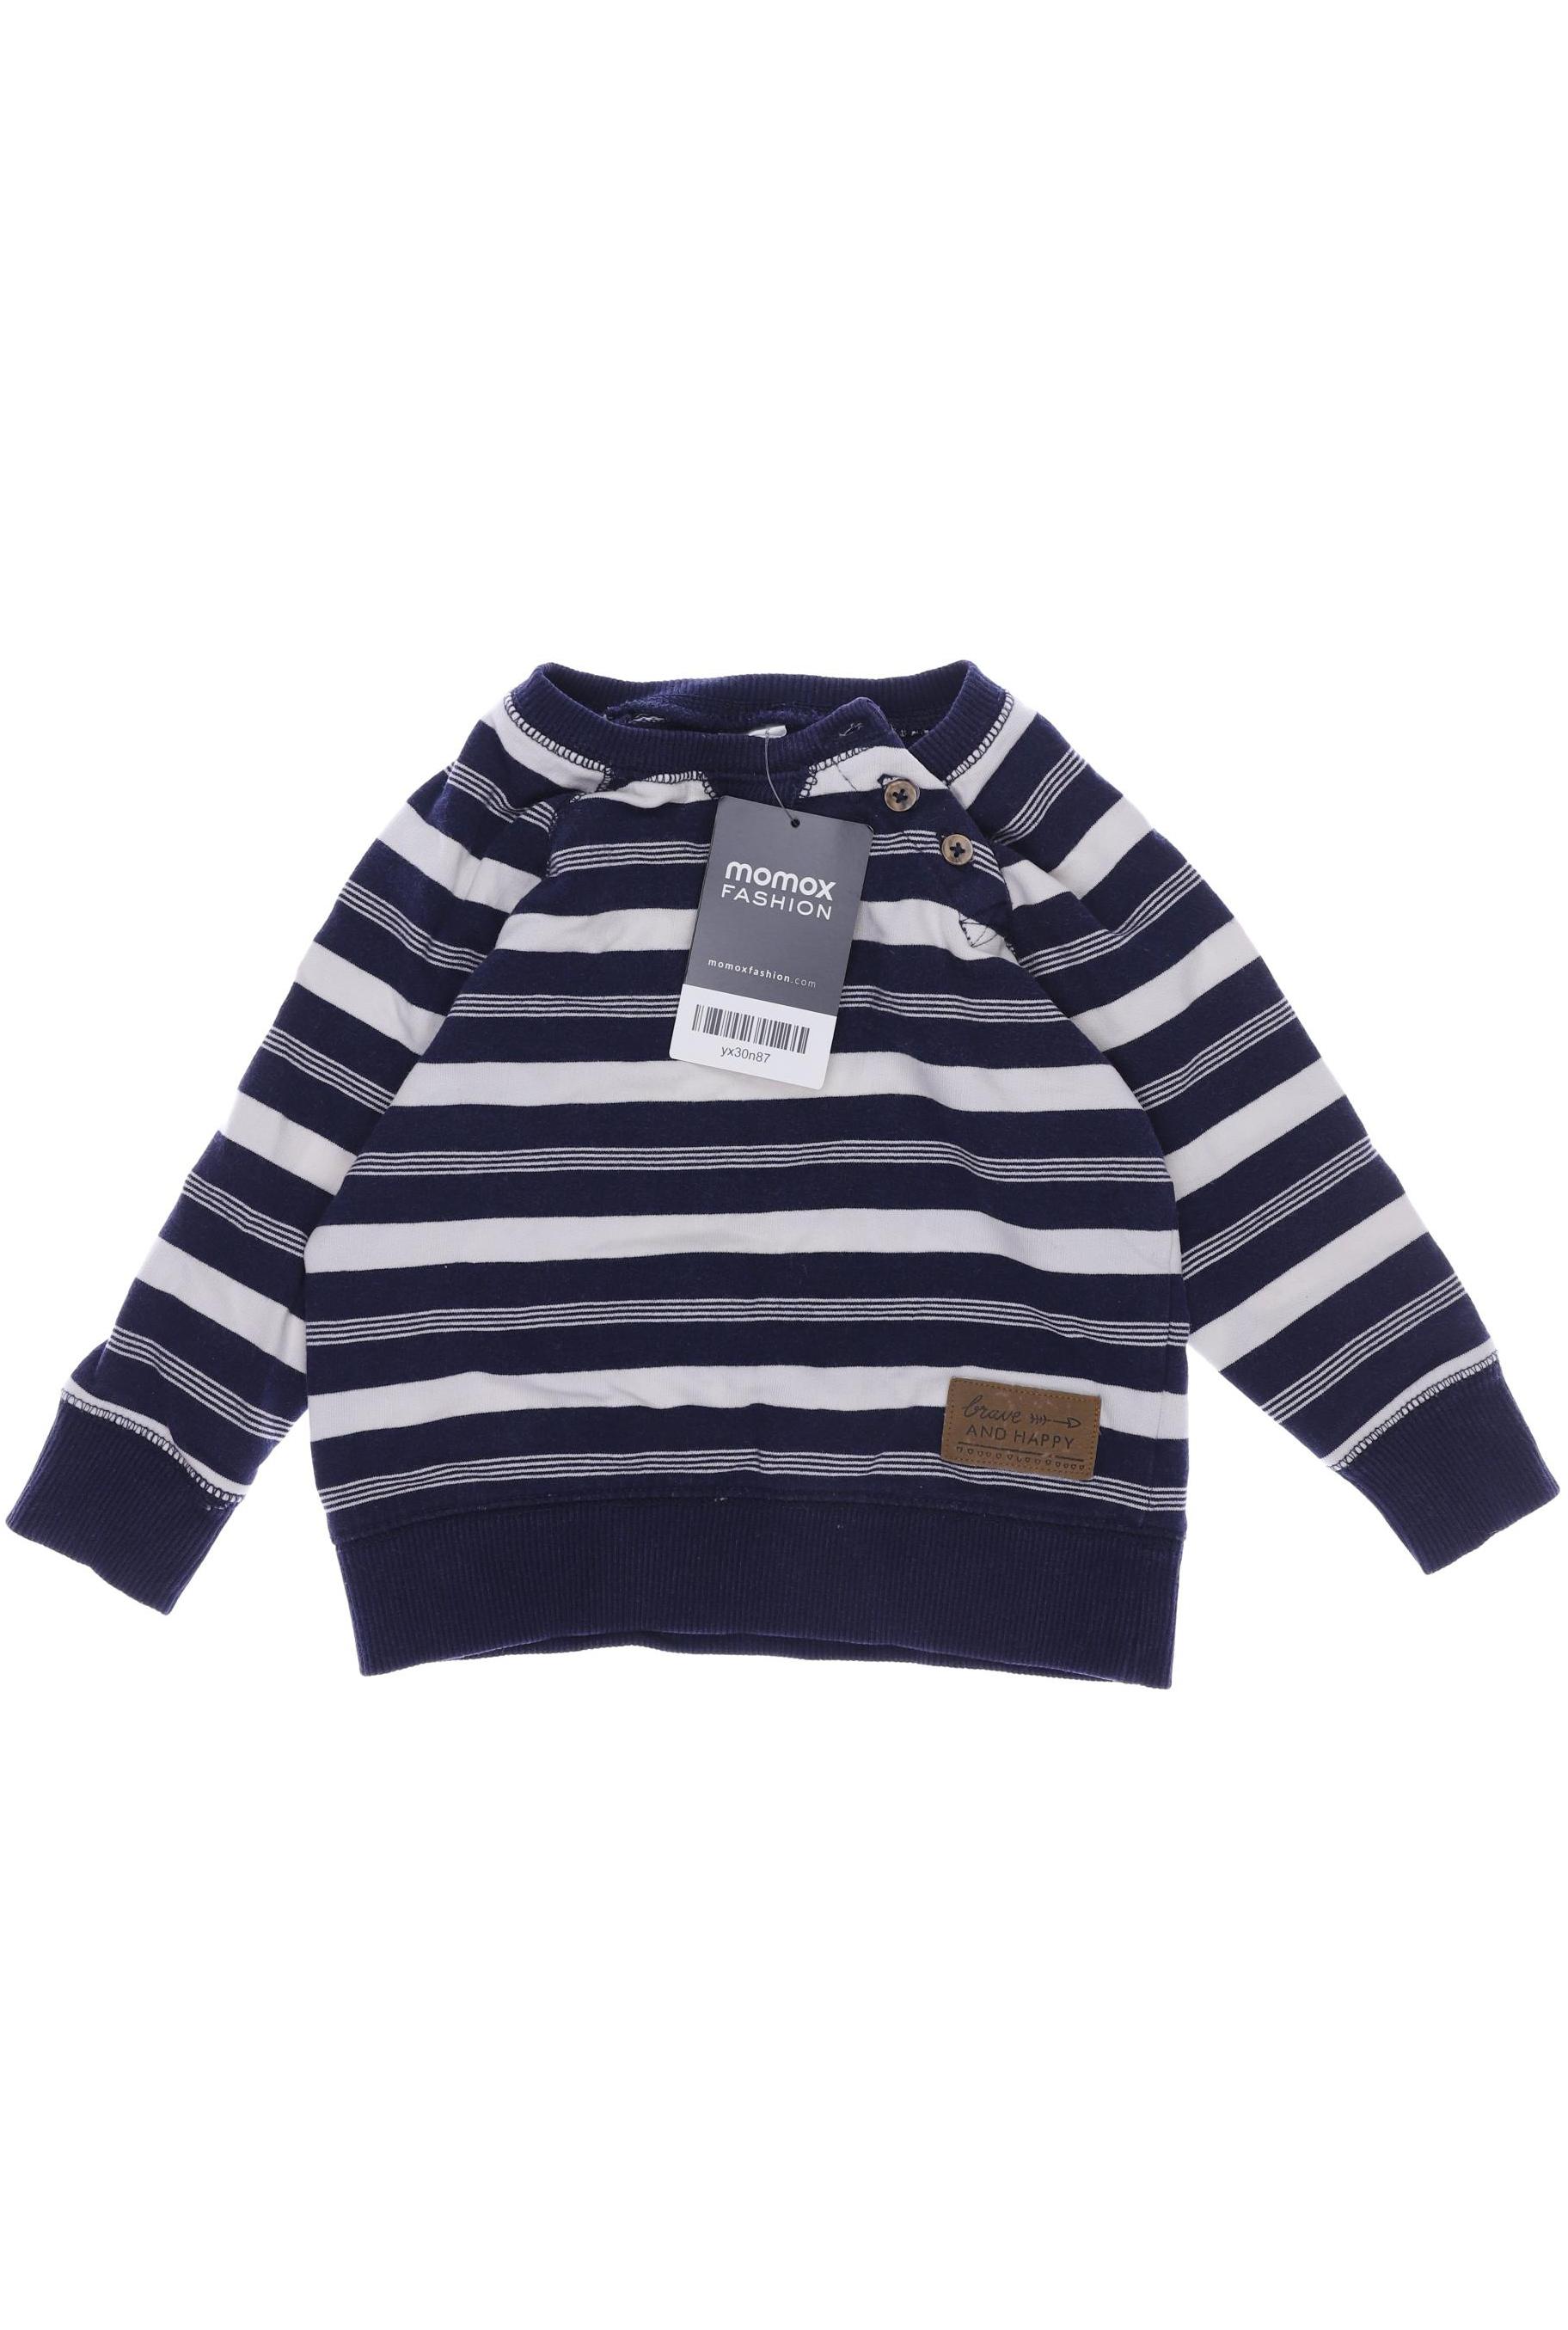 H&M Jungen Hoodies & Sweater, marineblau von H&M